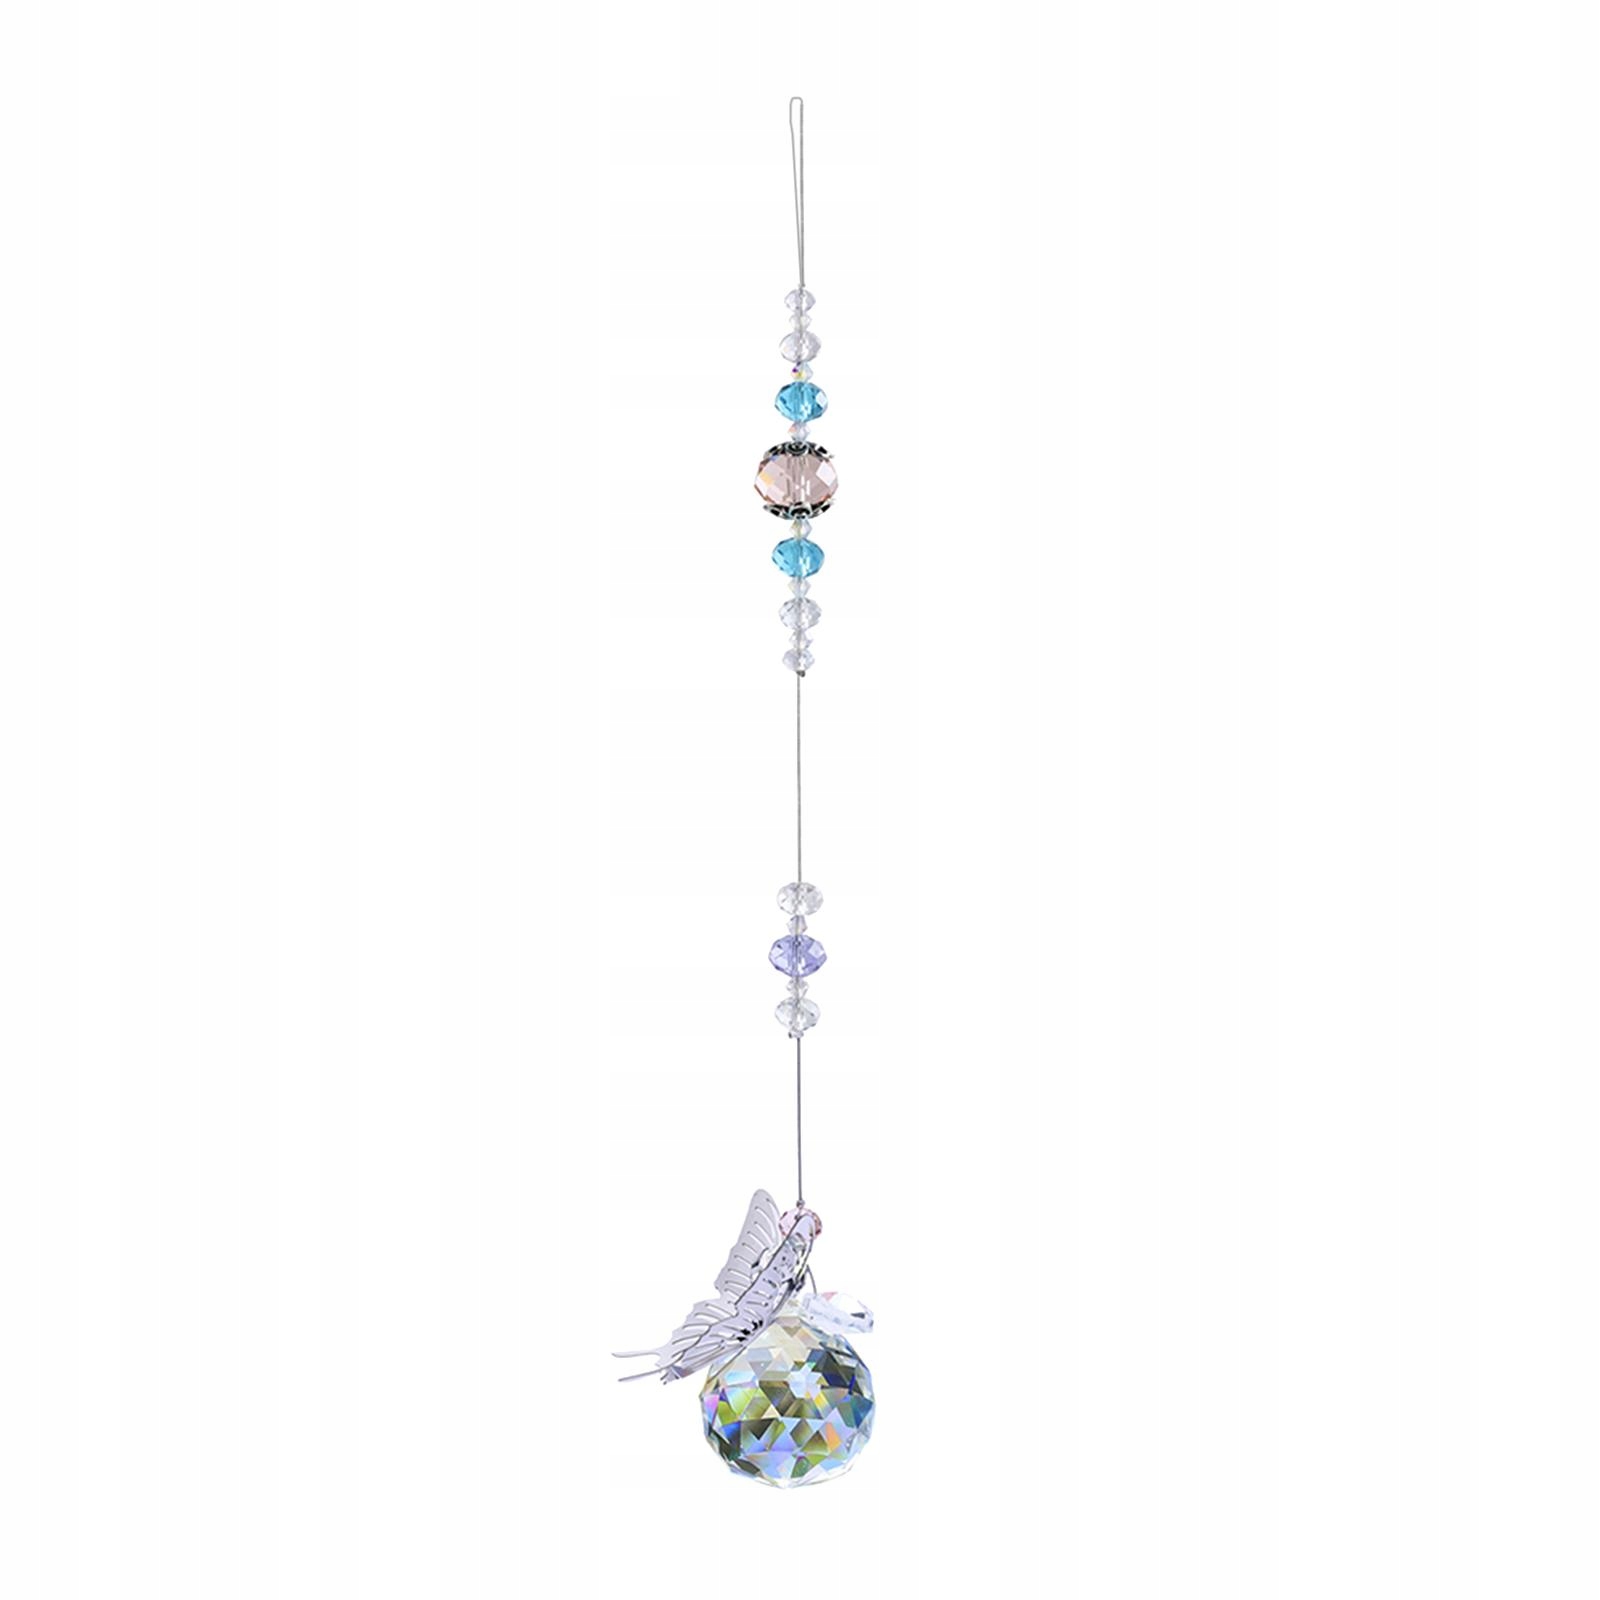 Závěsné krystaly Feng Shui Garden Crystal Wind za 205 Kč - Allegro